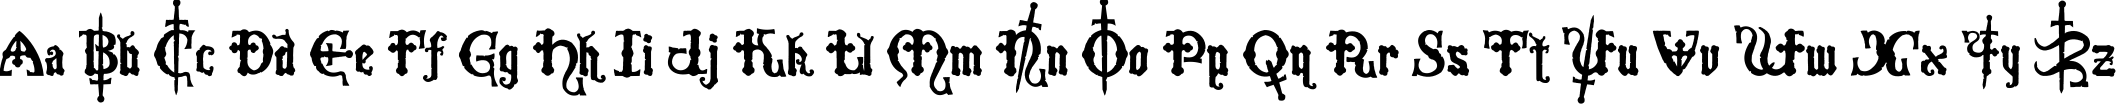 Пример написания английского алфавита шрифтом Crusades